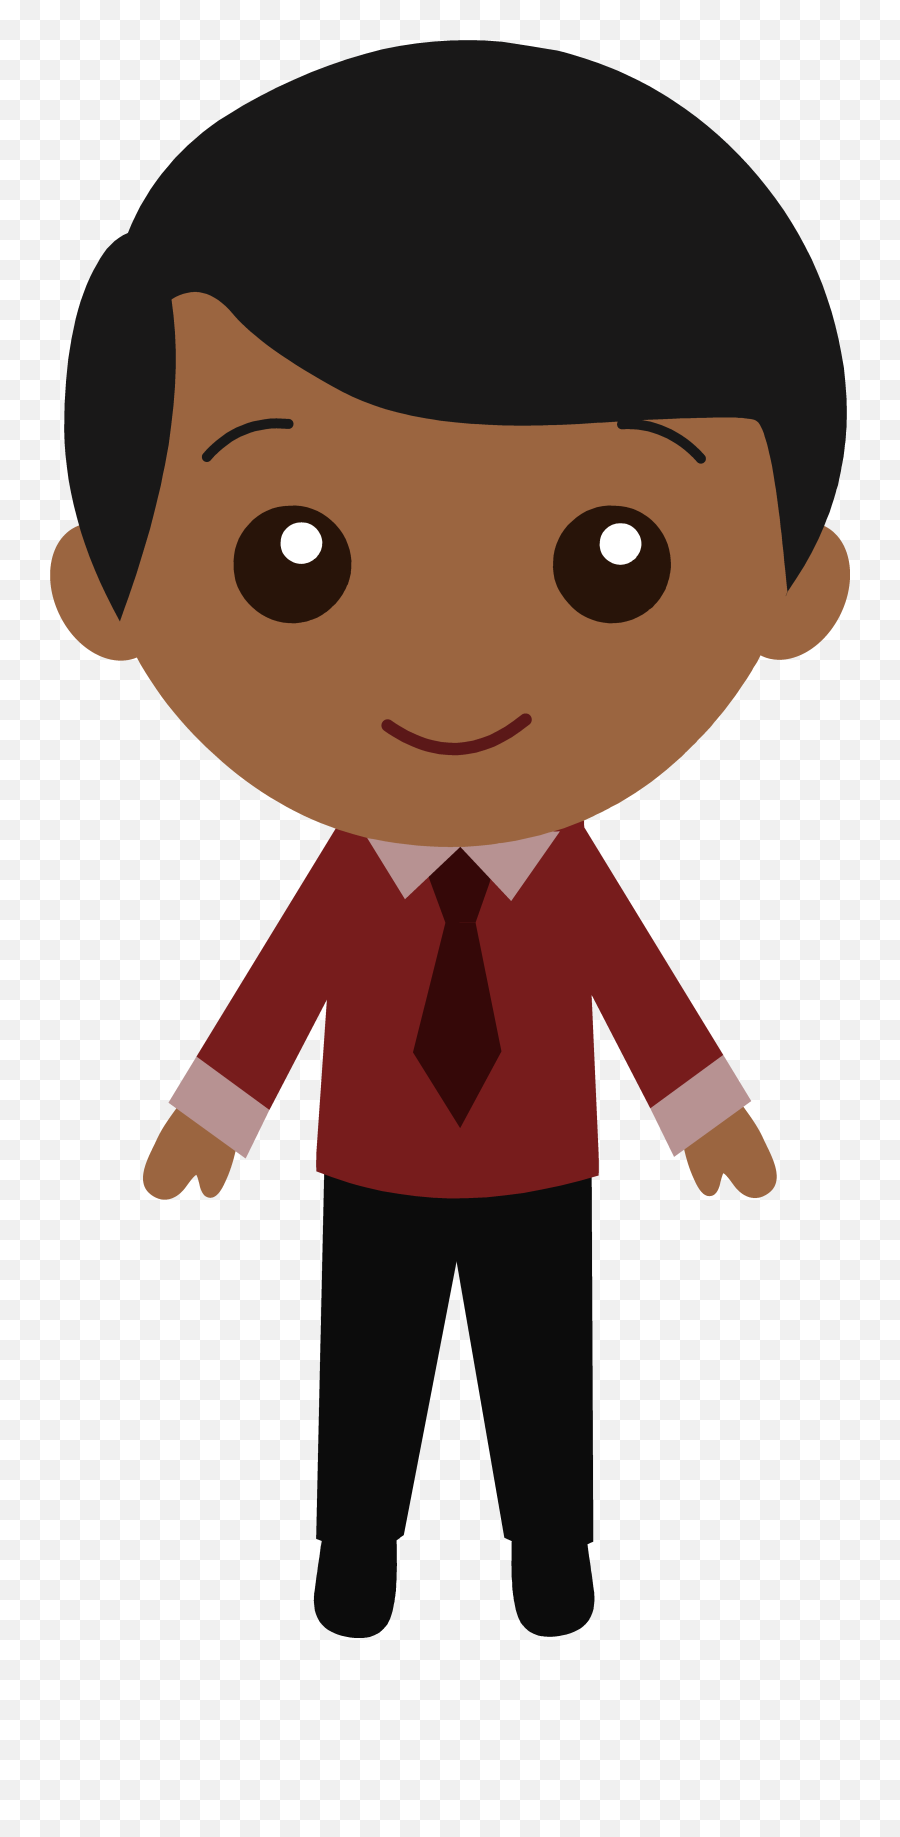 Teenager In Suit Free Image - Dibujo De Un Niño Negro Emoji,Teenager Emotions Clipart